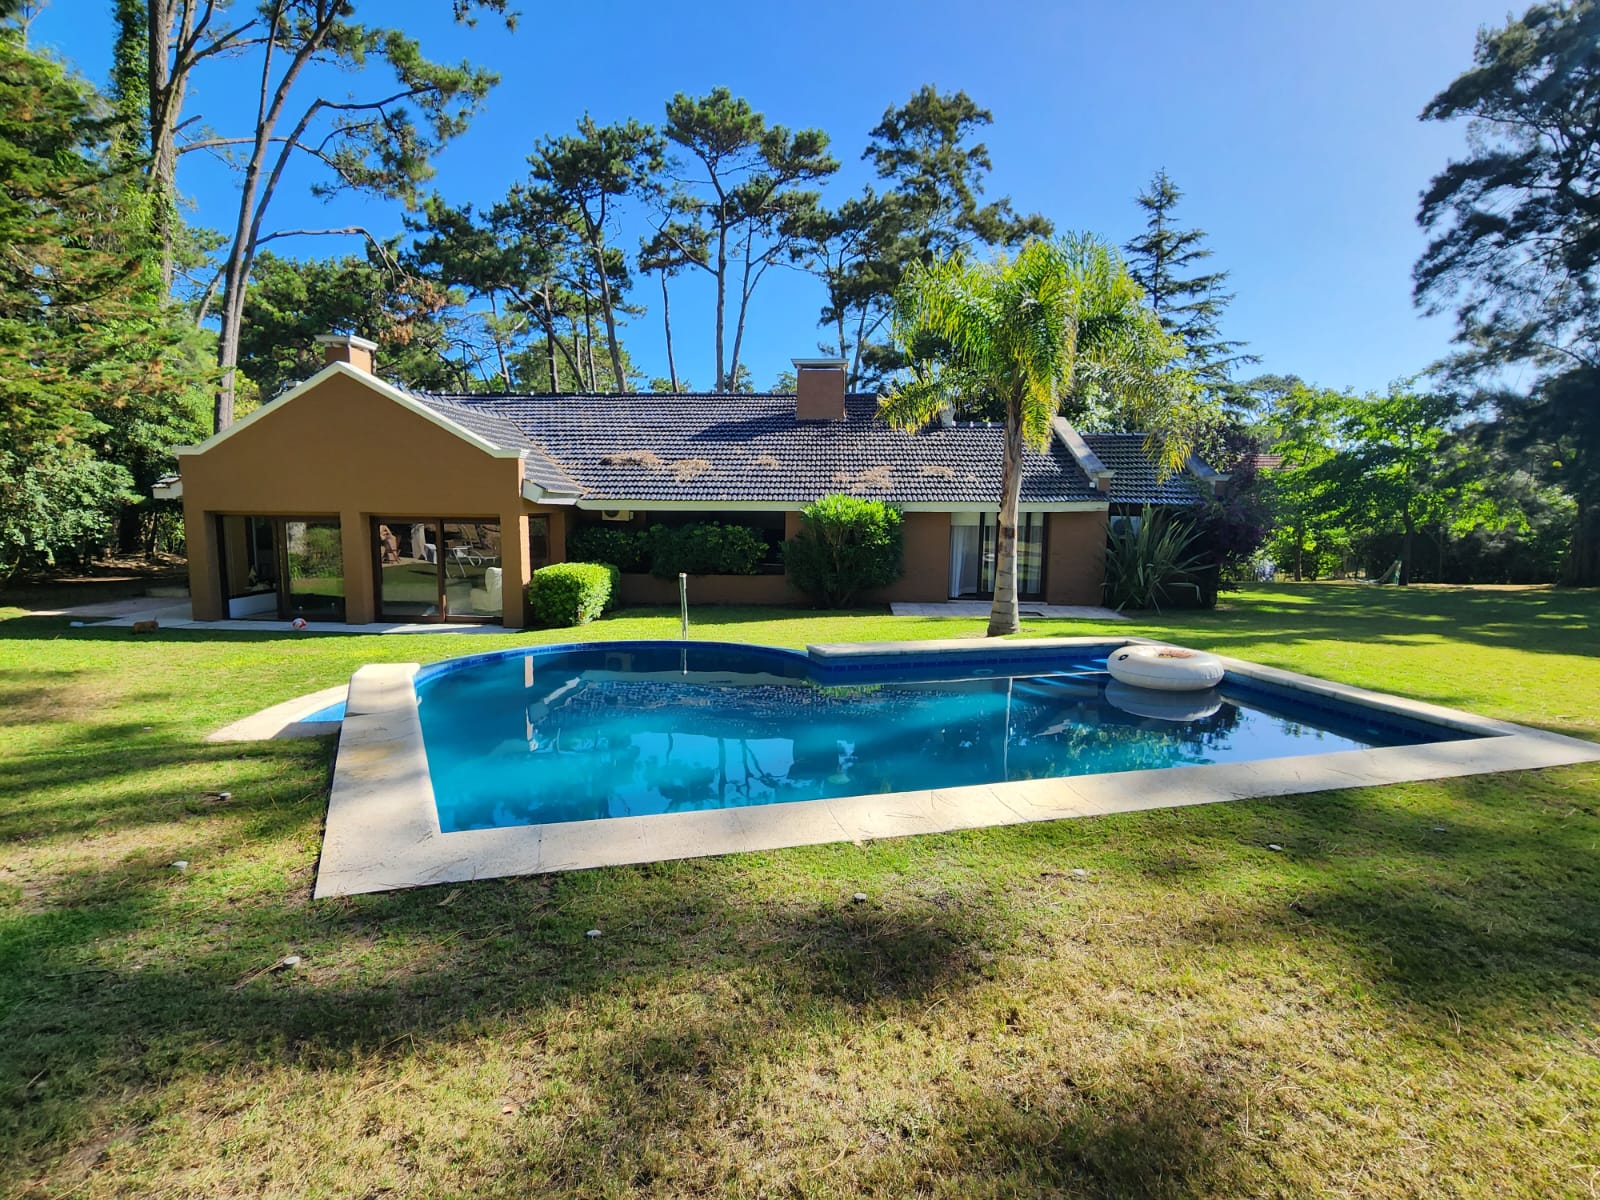  Venta y alquiler anual de espectacular casa 4 dormitorios en San Rafael con parque y piscina